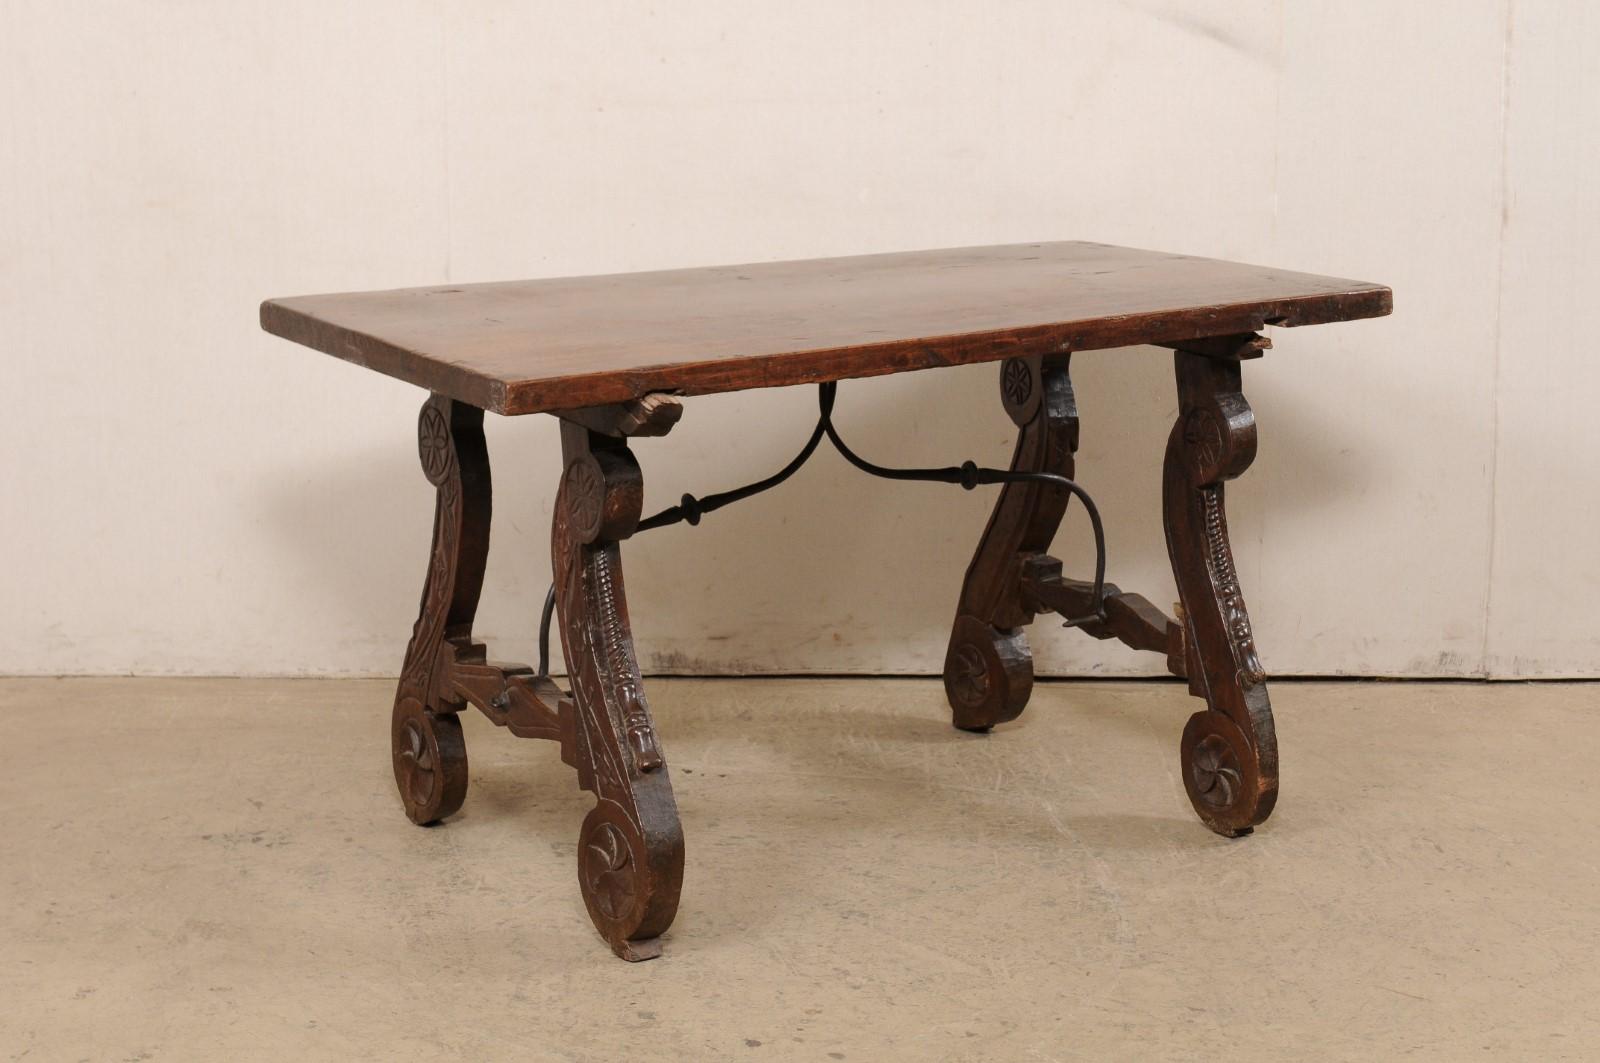 Table à traverse en bois de noyer espagnol, avec des pieds en lyre magnifiquement sculptés, du 18ème siècle. Cette table ancienne d'Espagne présente un plateau de forme rectangulaire composé d'une seule planche, reposant sur une paire de pieds en